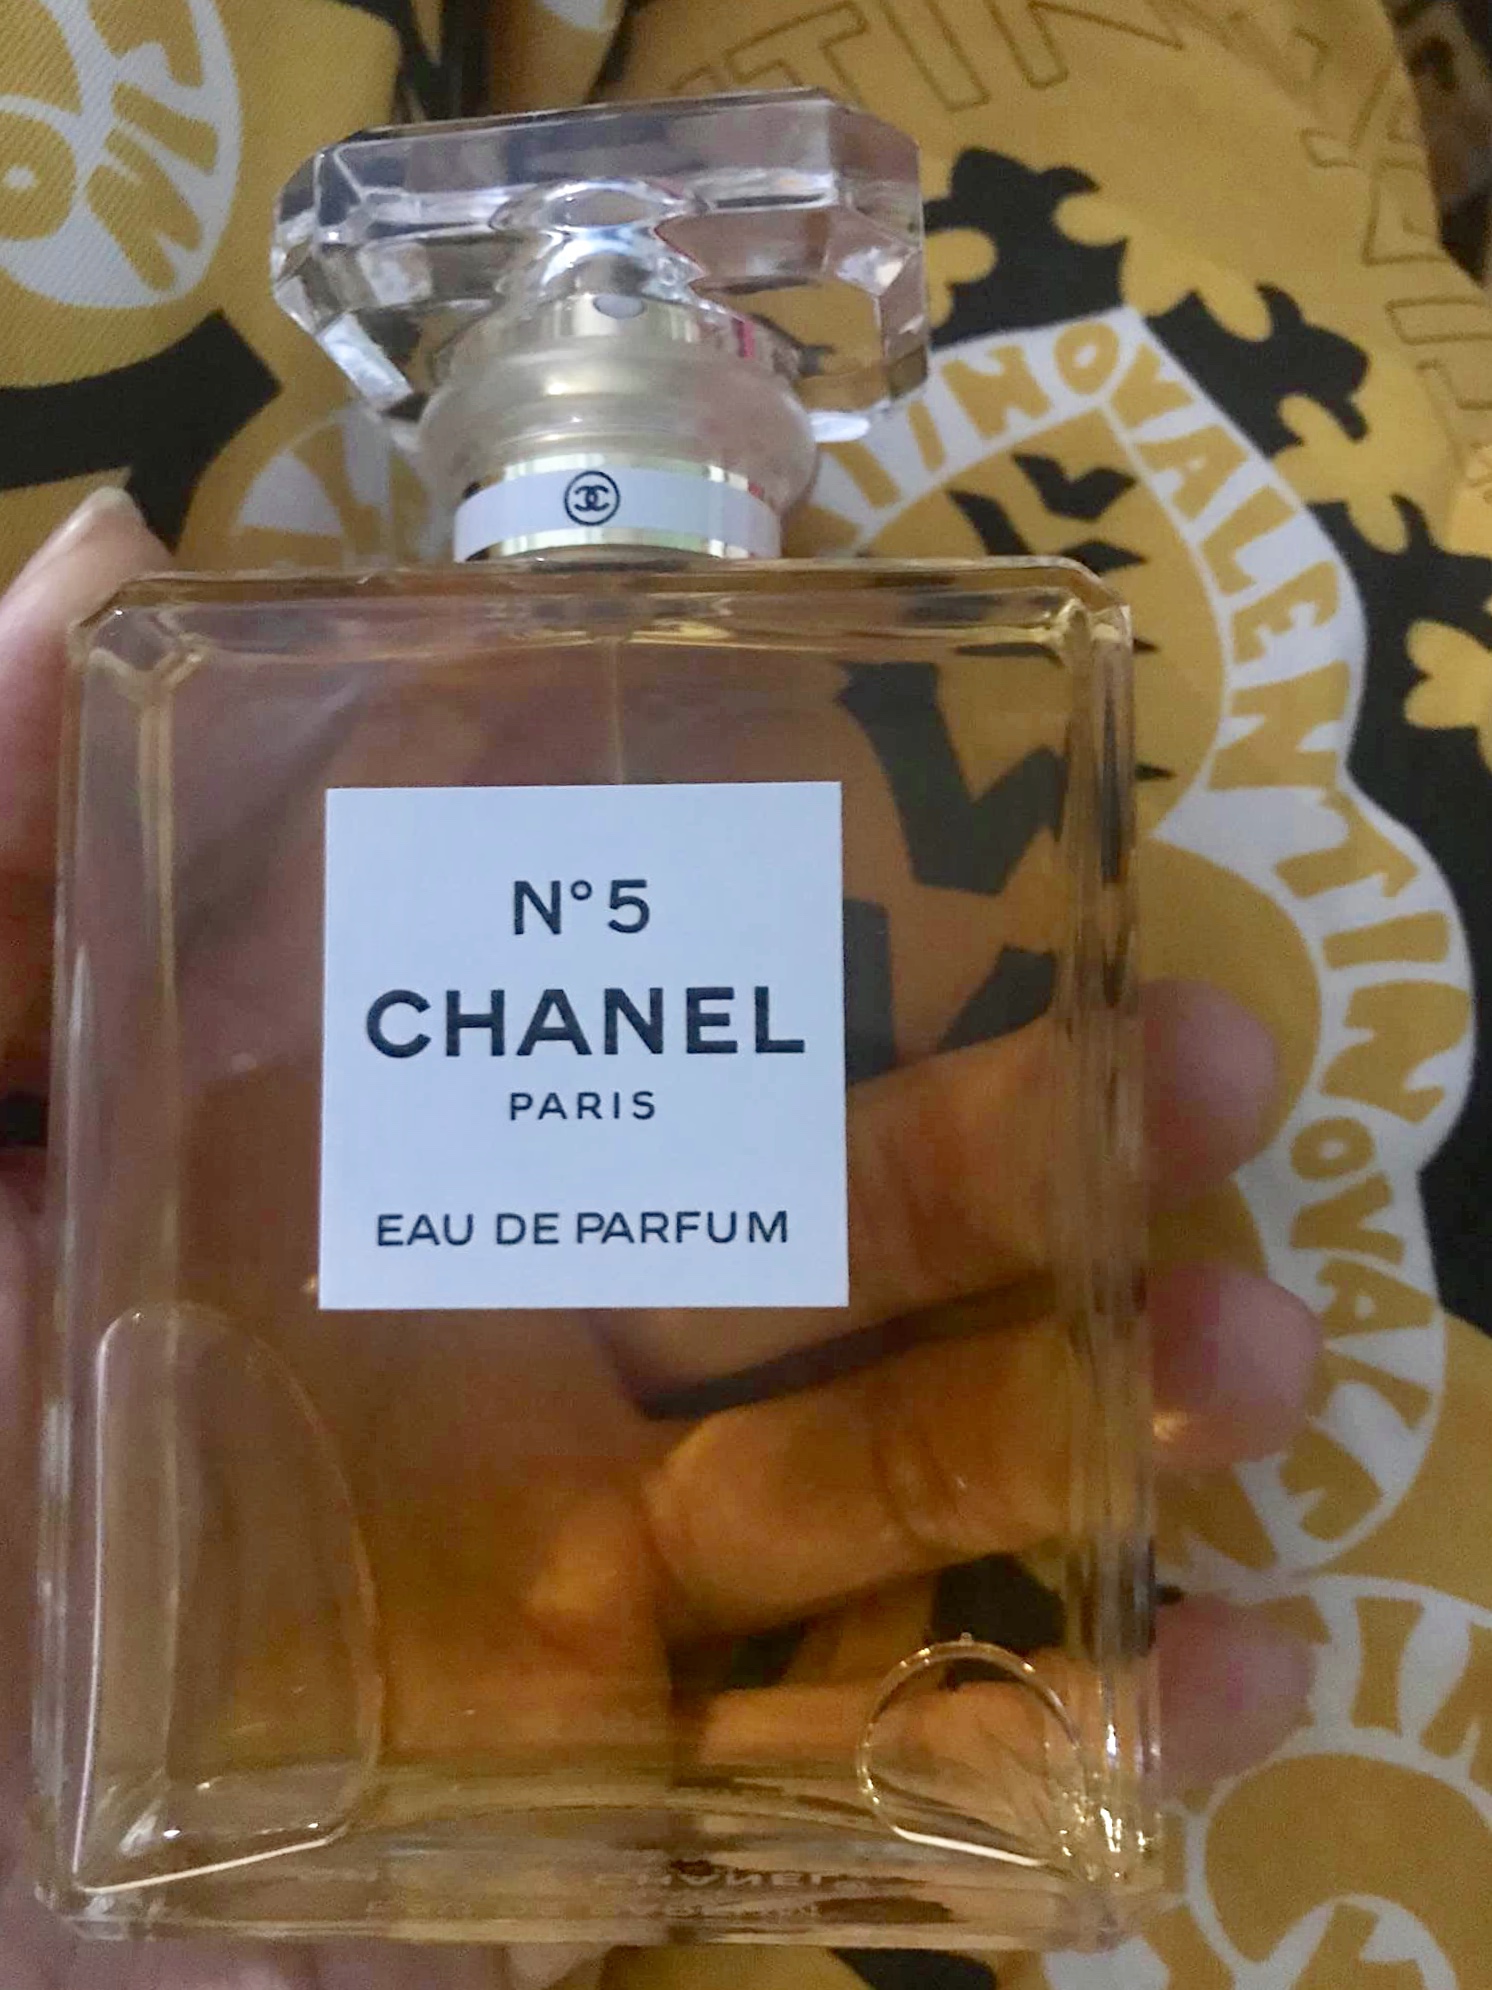 Chanel No 5 Eau de Parfum Red Edition  ĐỨC PERFUME